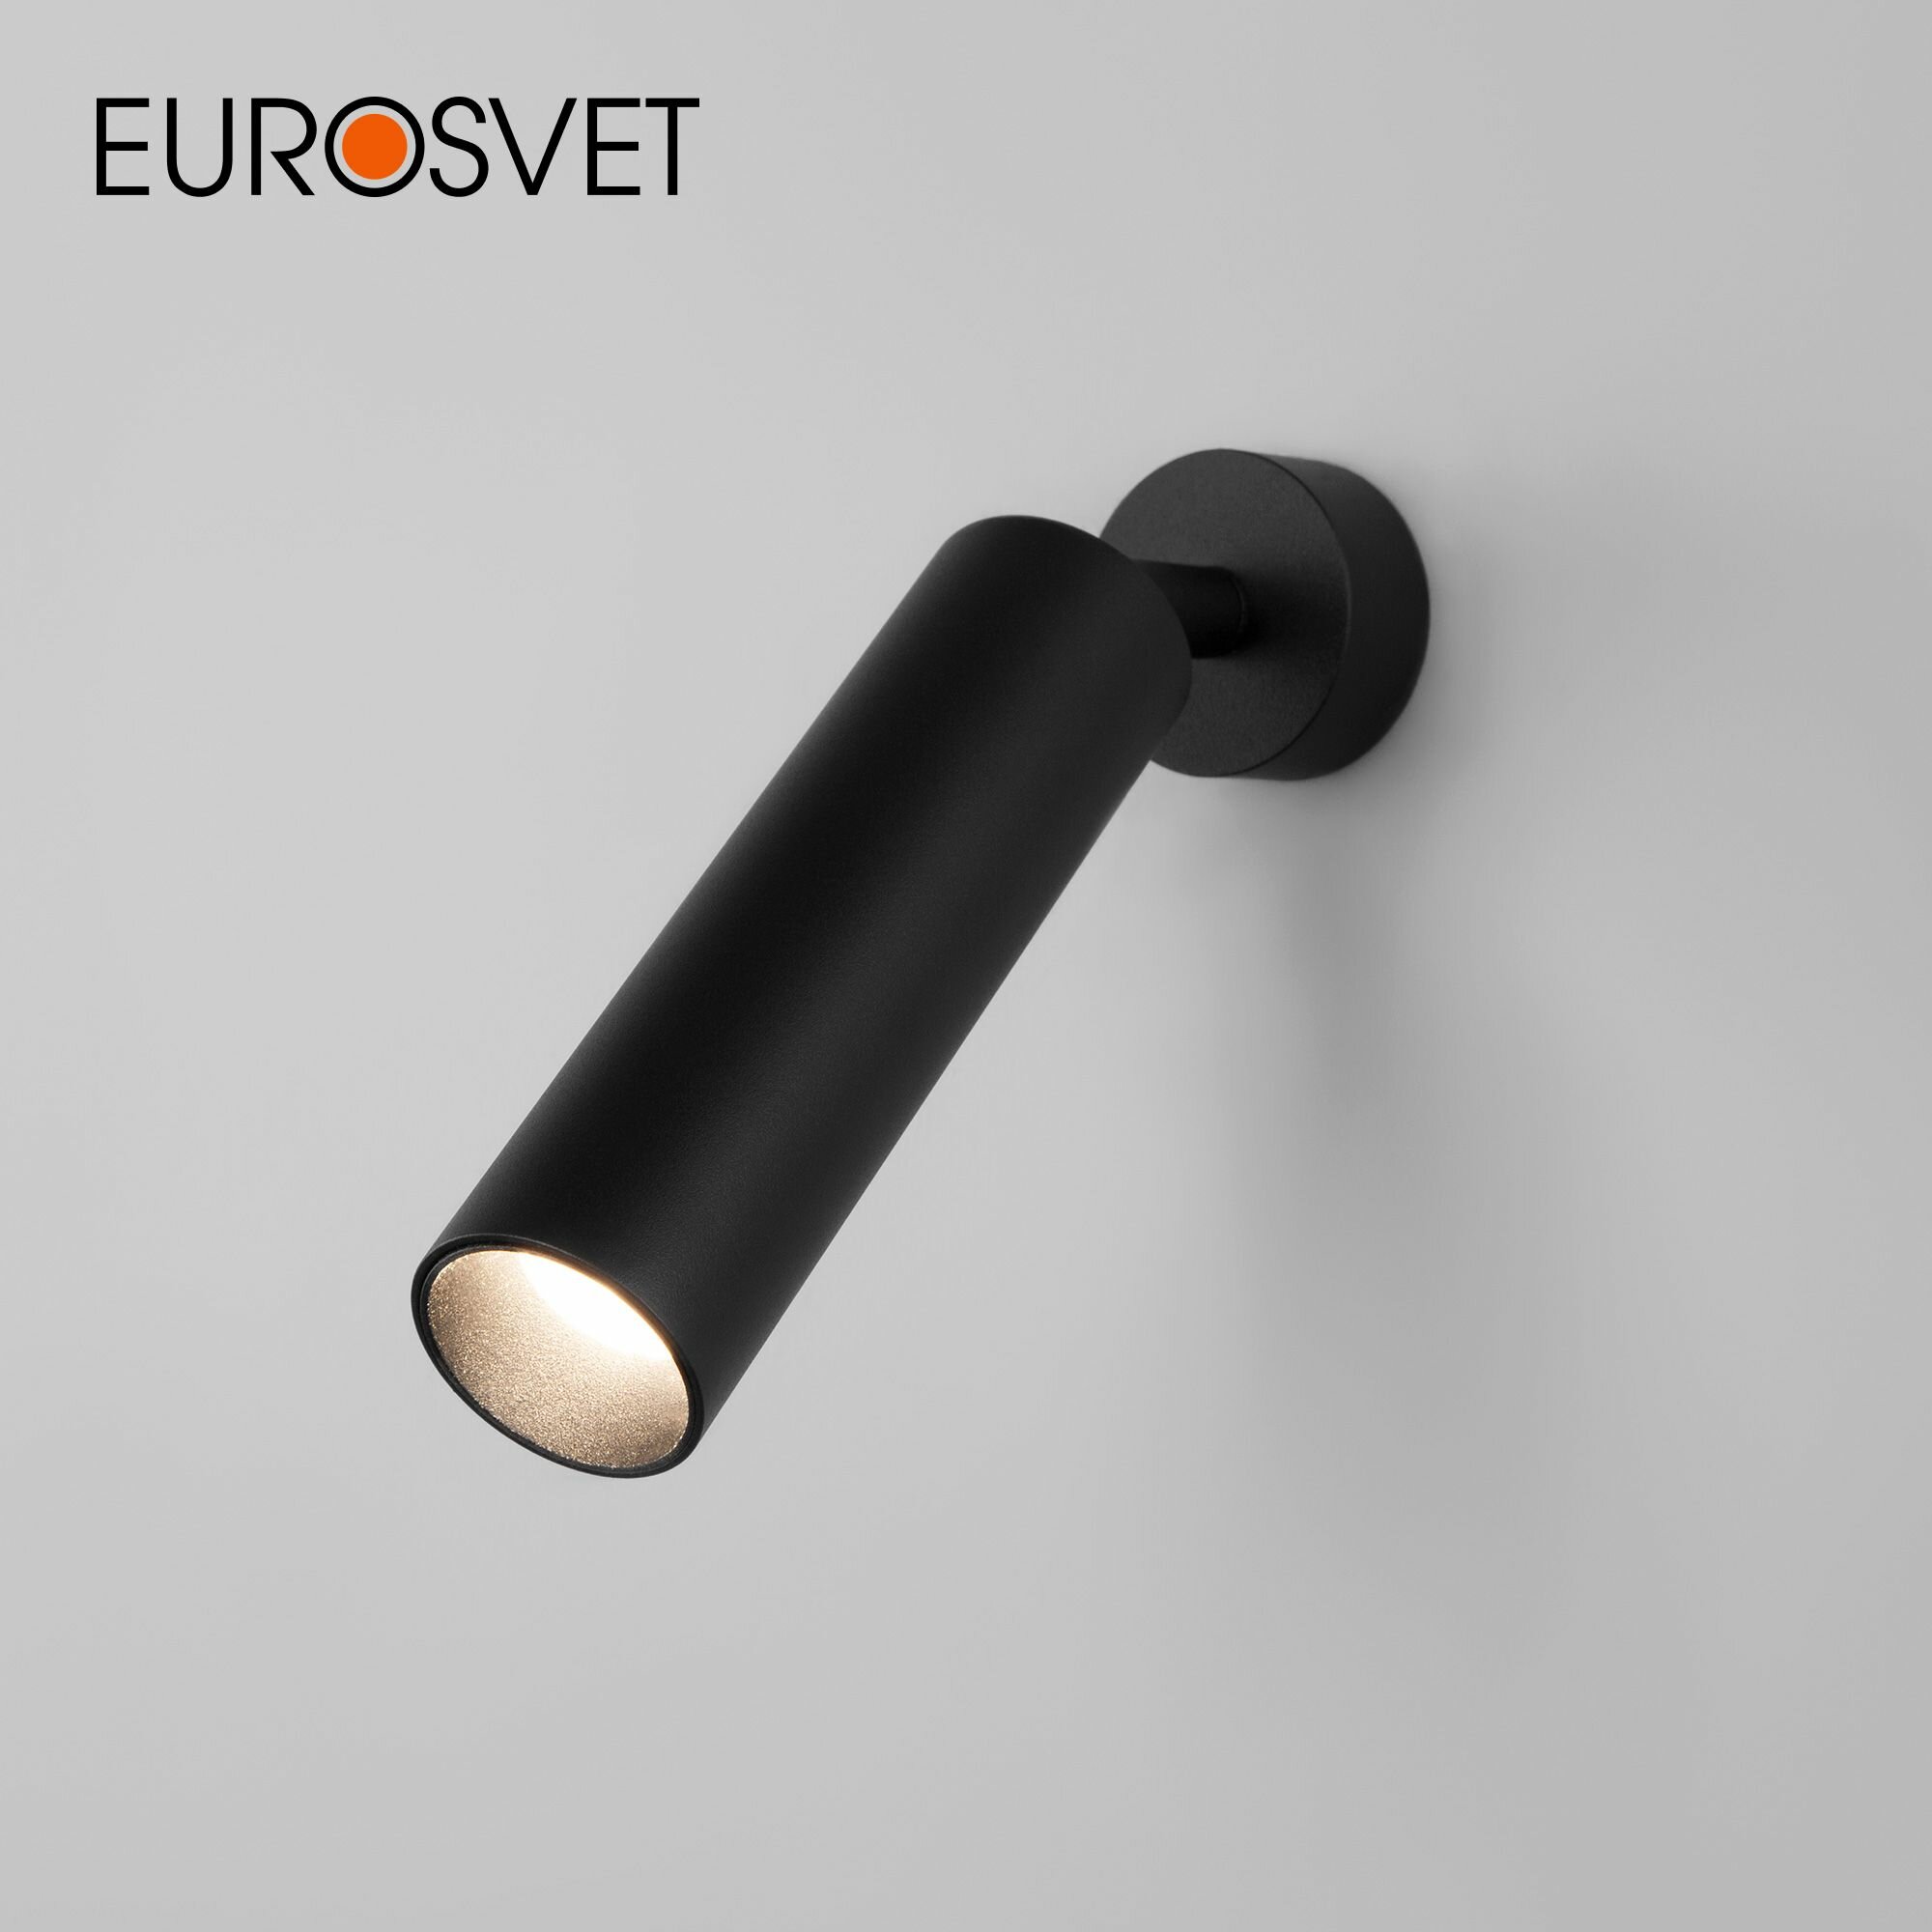 Спот / Настенный светодиодный светильник с поворотным плафоном Eurosvet Ease 20128/1 LED, 8 Вт, 4200 К, цвет черный